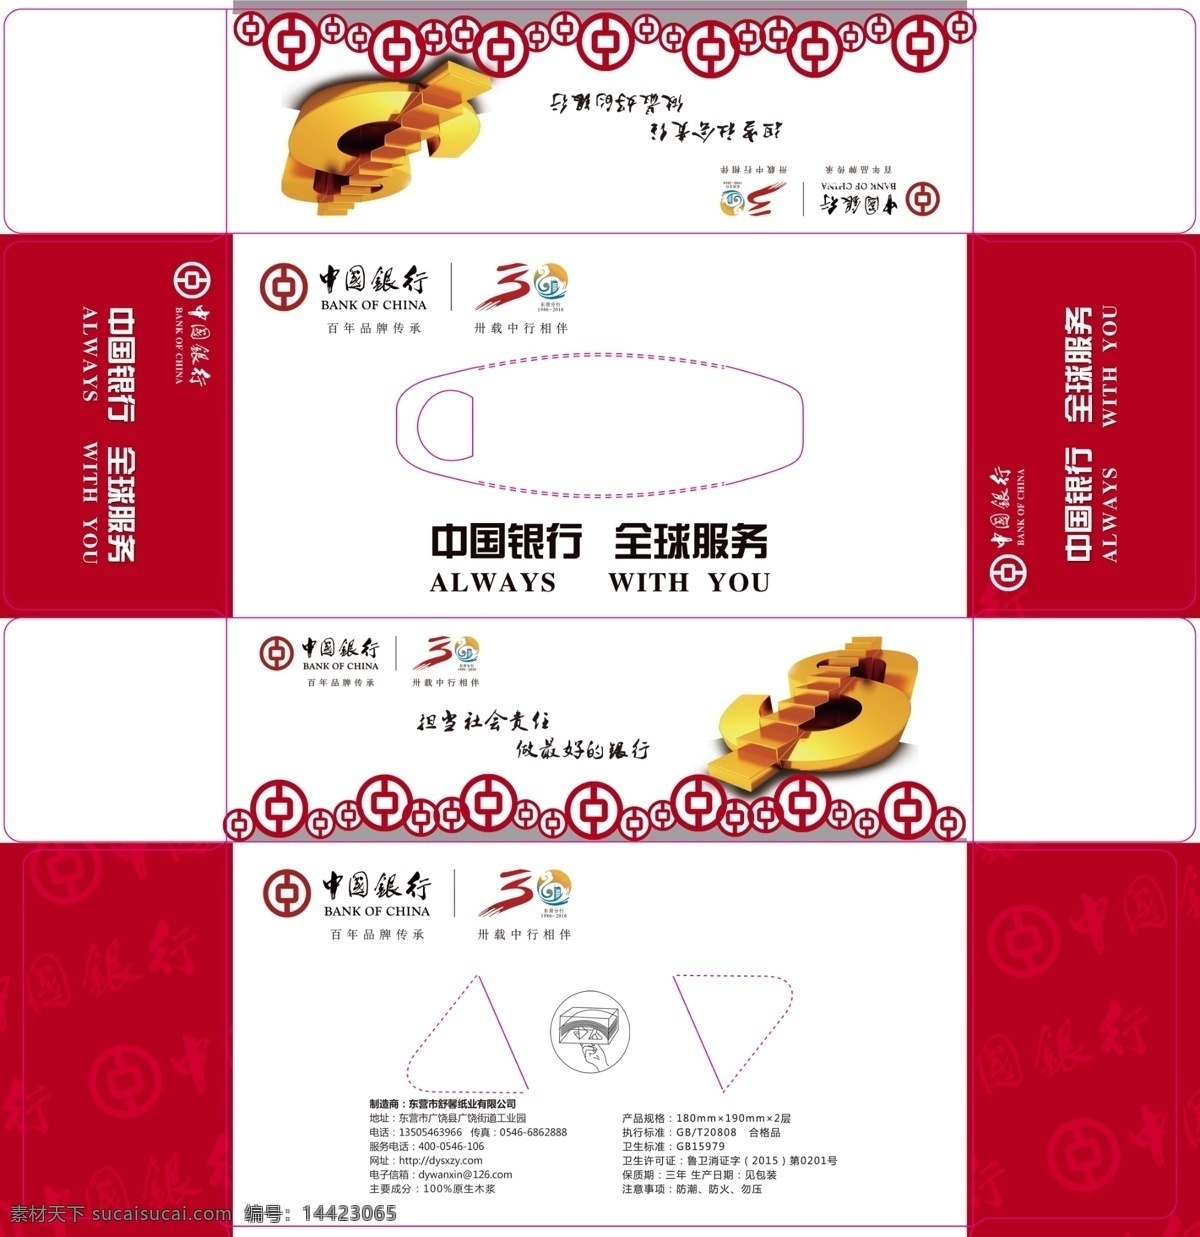 中国银行 东营 分行 周年 展开 图 东营分行 30周年 银行标志 钱币图片 包装设计 白色